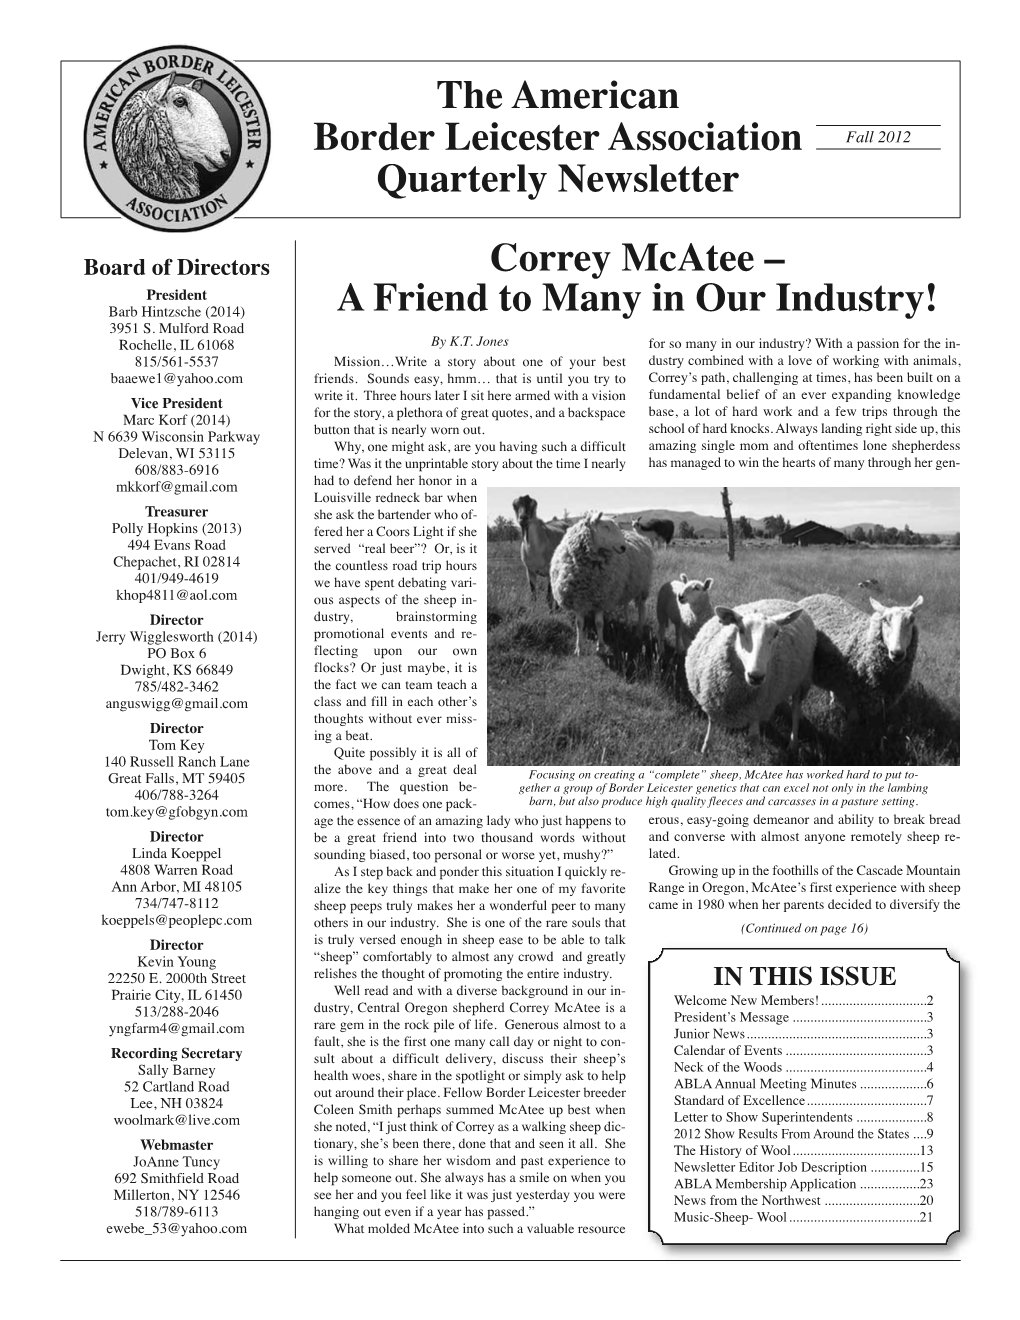 Fall 2012 Quarterly Newsletter